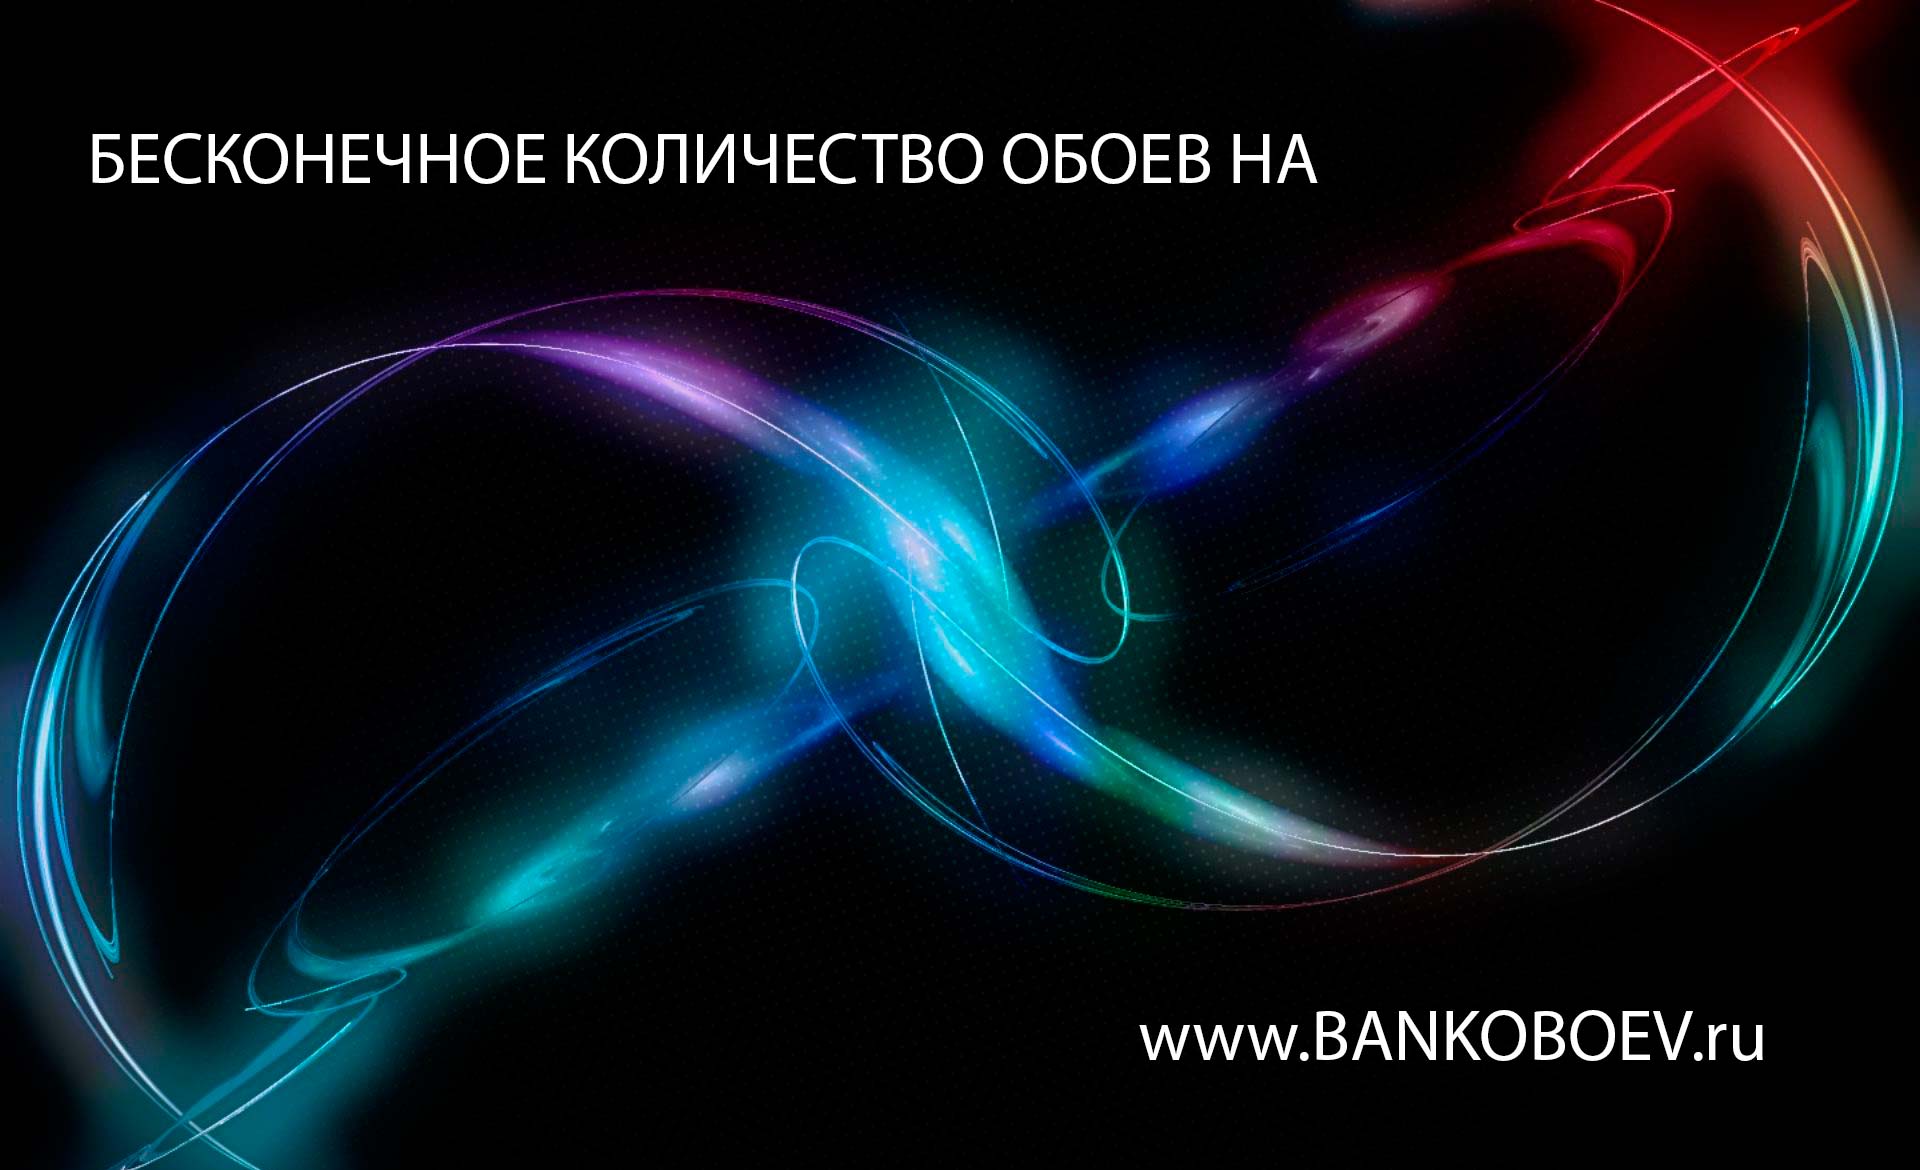 Bankoboev Ru Image Mtm0odc3 Jpg